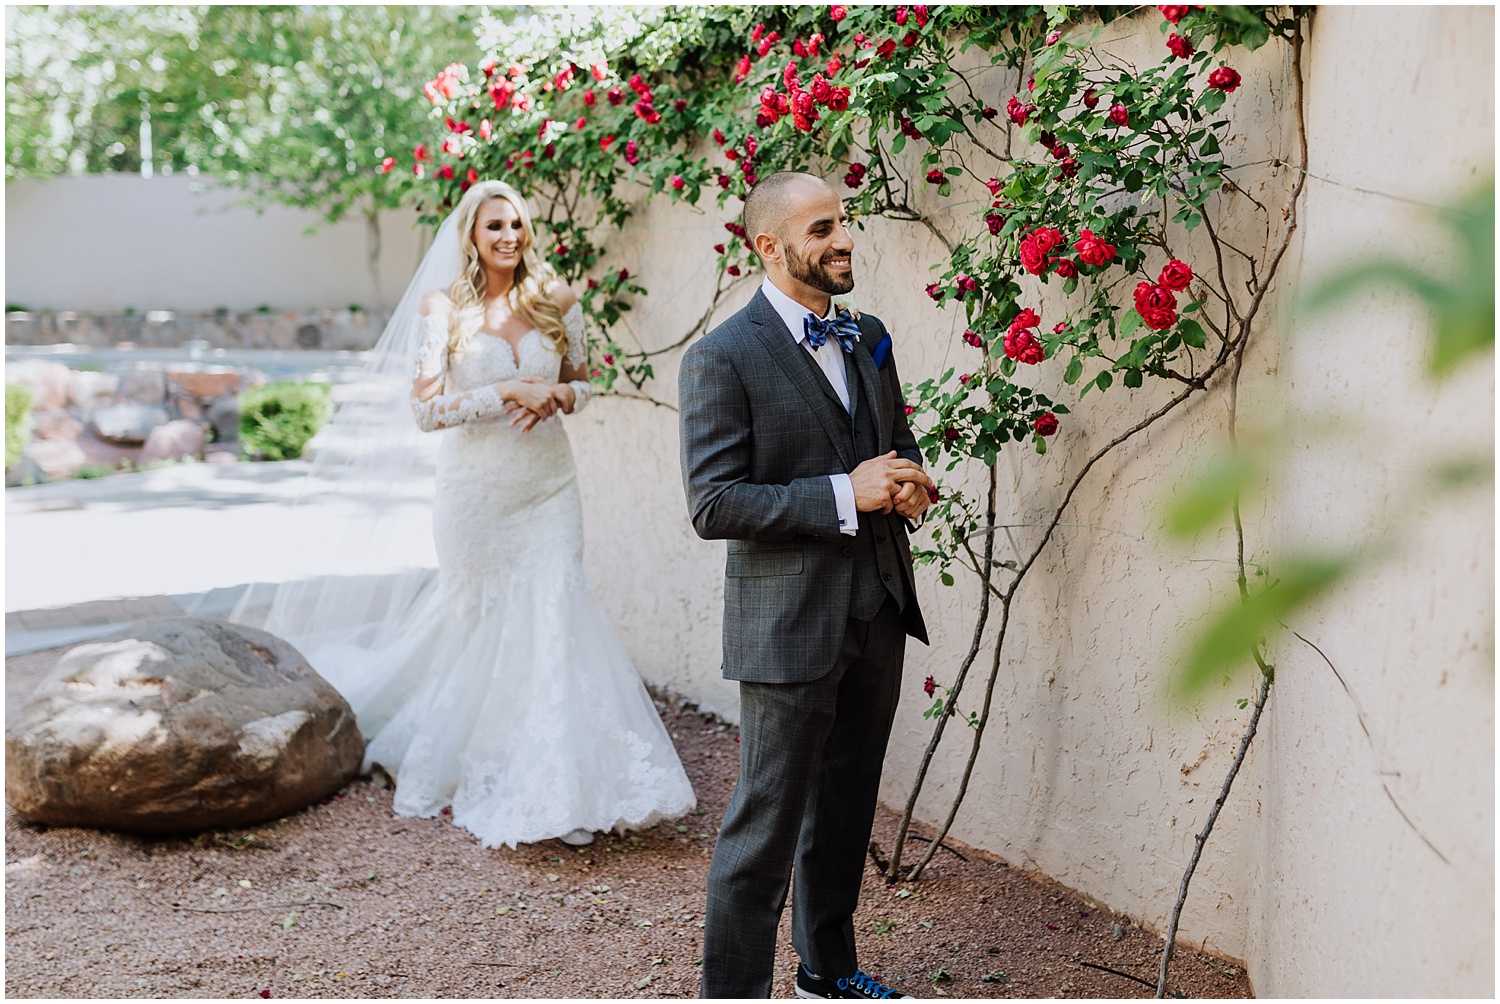 Outdoor Summer Wedding in Sedona, Arizona